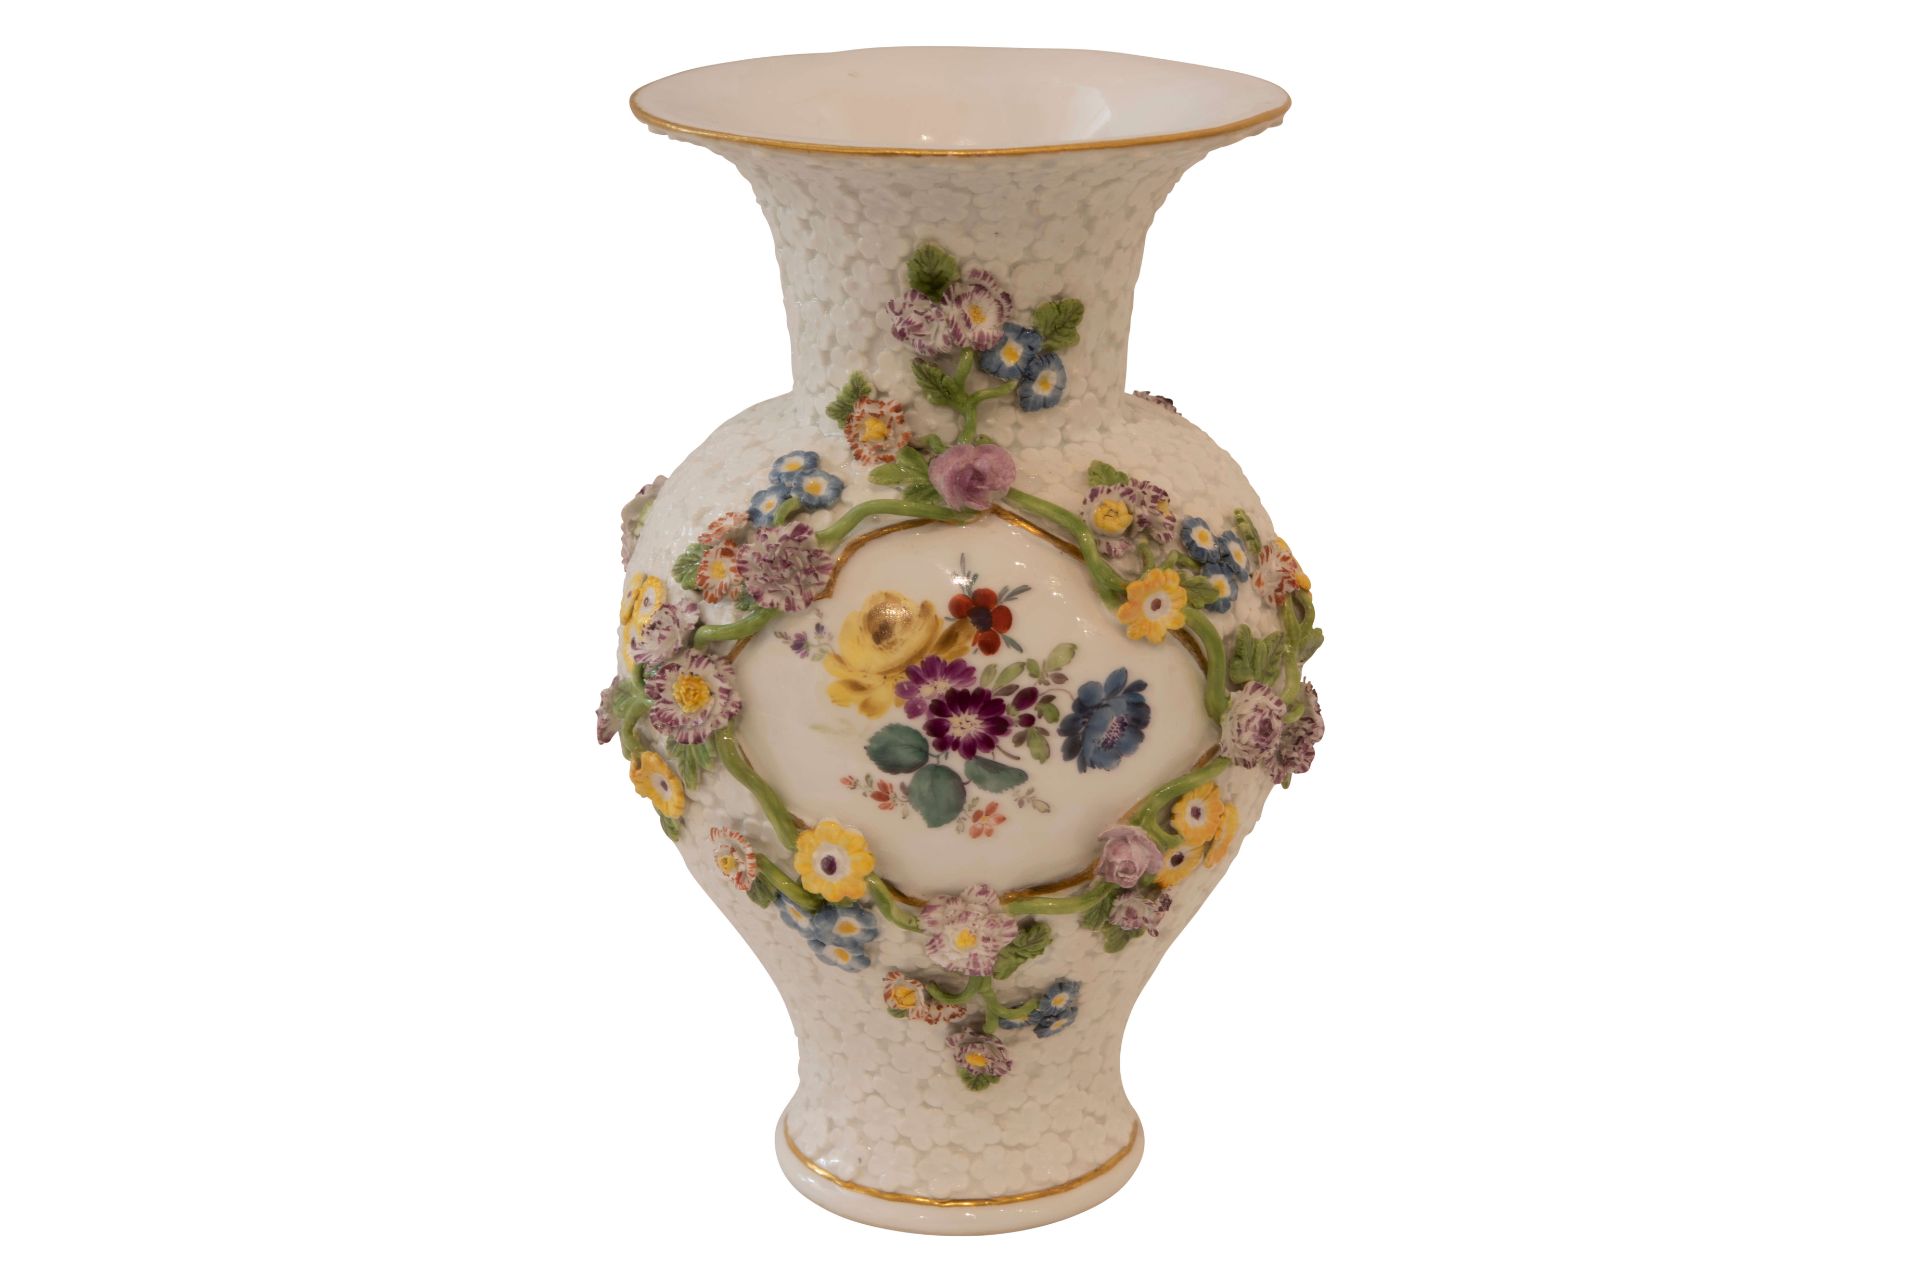 Meissen 1745, Vergiss-mein-nicht Vase
|Meissen 1745, Forget-Me-Not Vase
